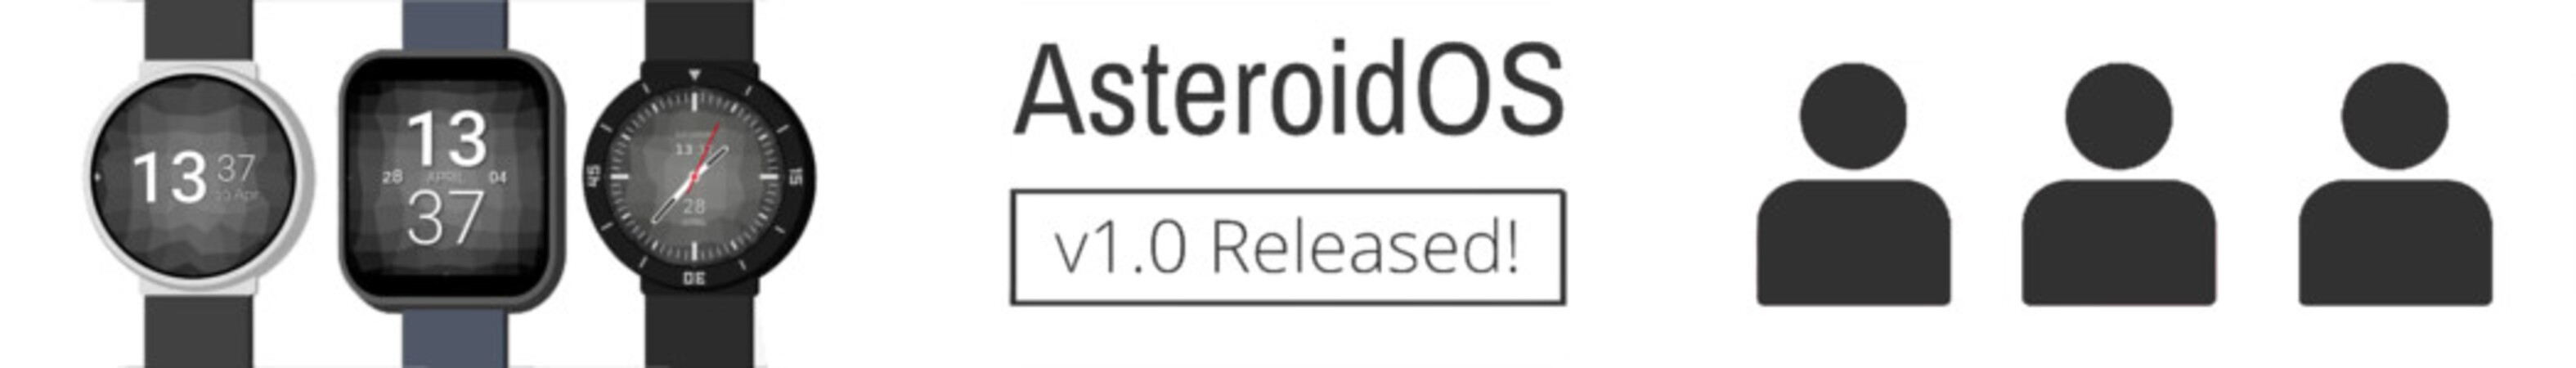 AsteroidOS, sistemul de operare open-source pentru smartwatches alimentat de sistemul de operare Google Wear OS - GNU/Linux